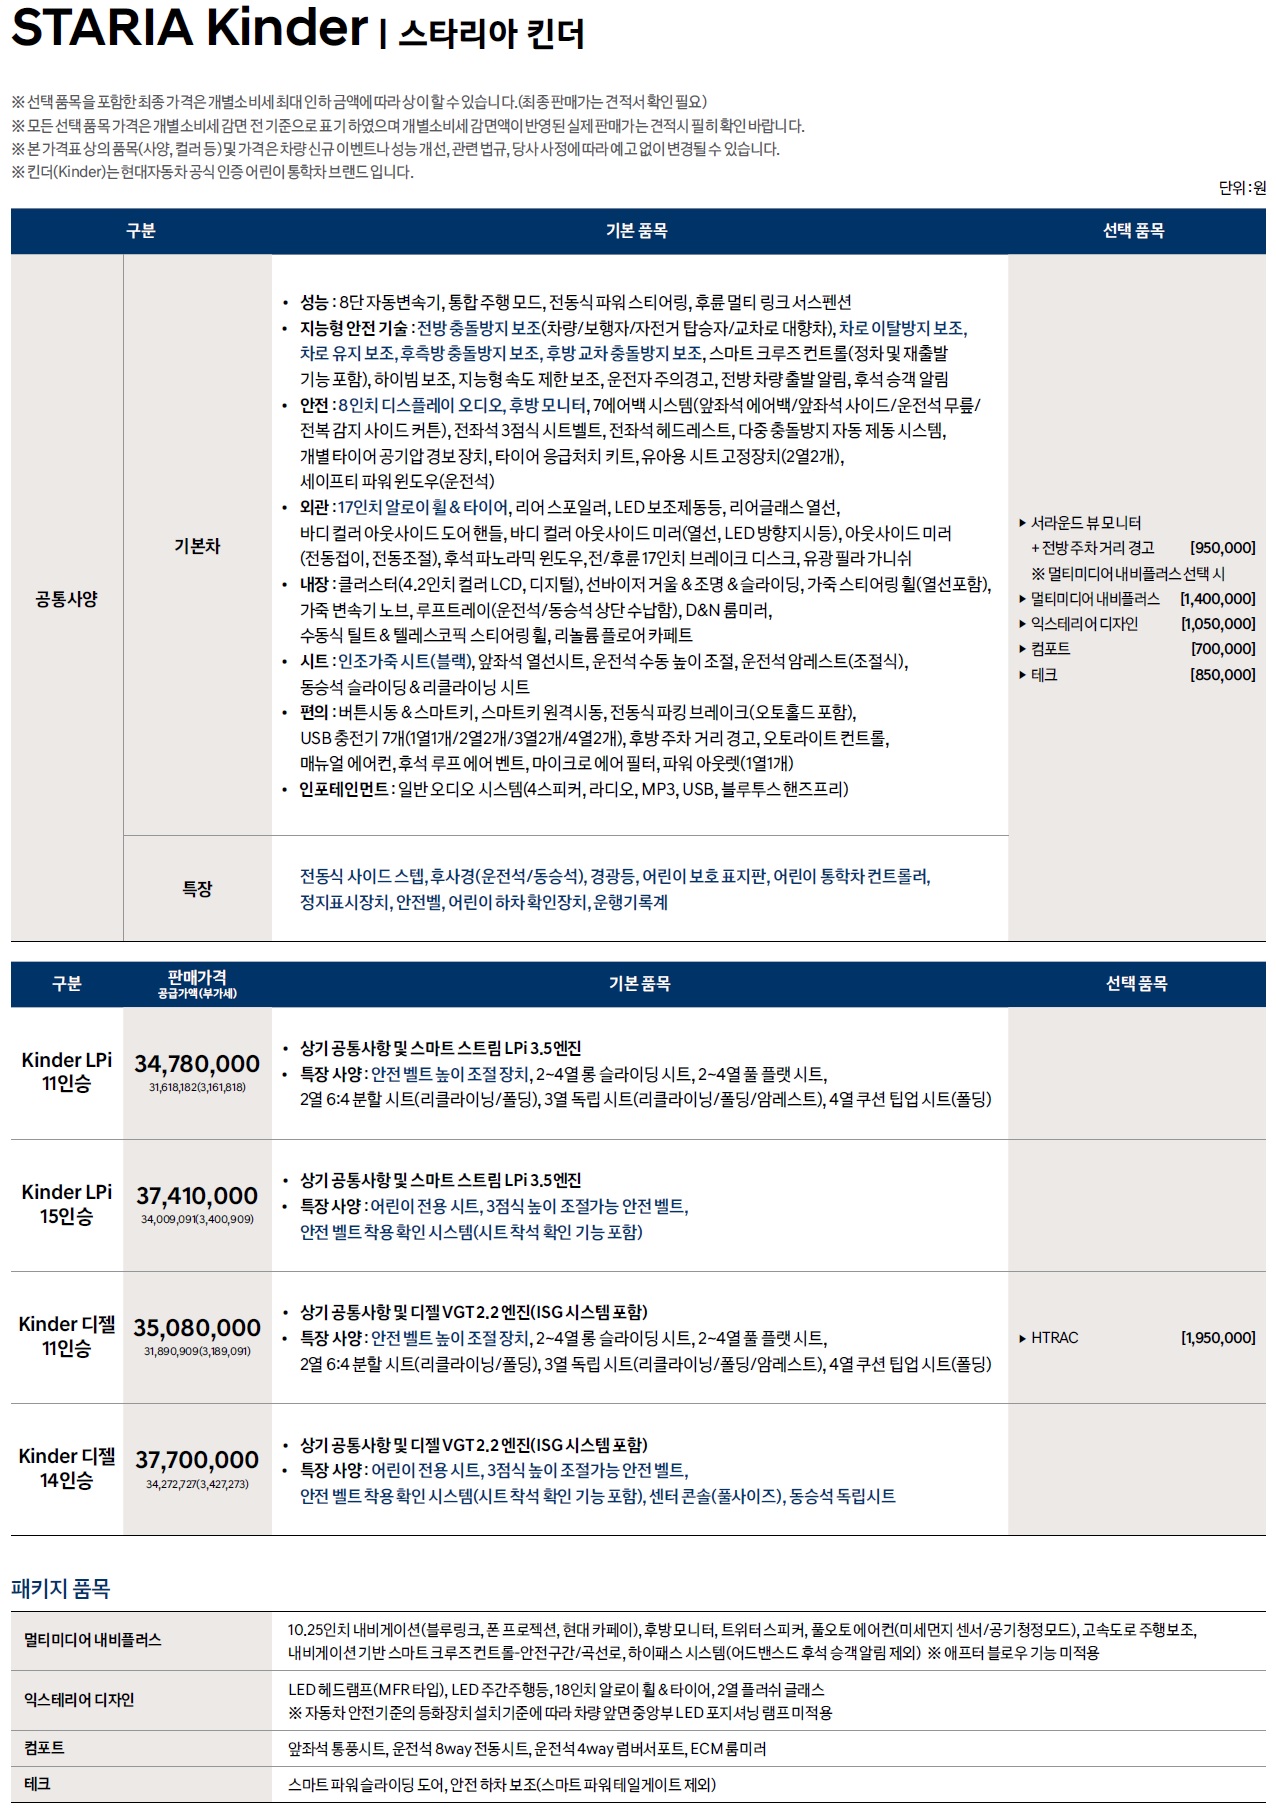 스타리아 킨더 가격표 - 2022년 08월 -1.jpg